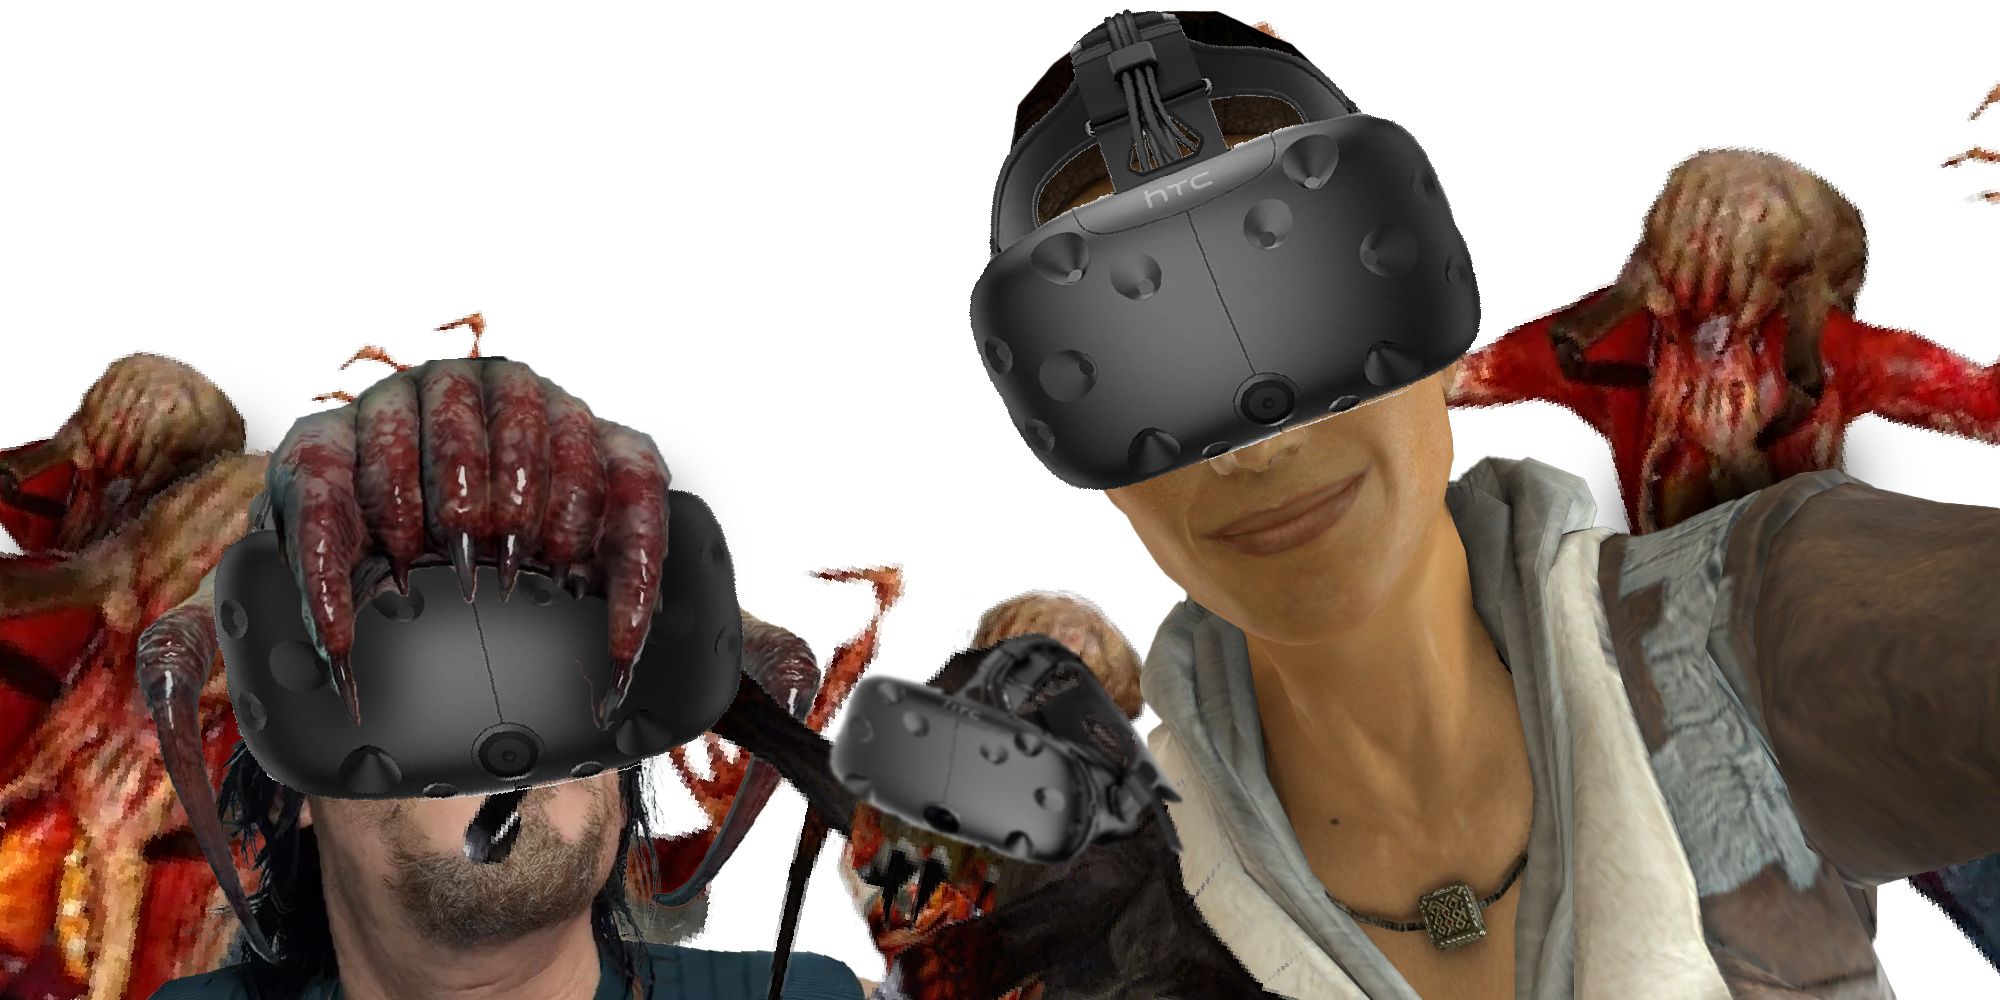 VR Headcrabs